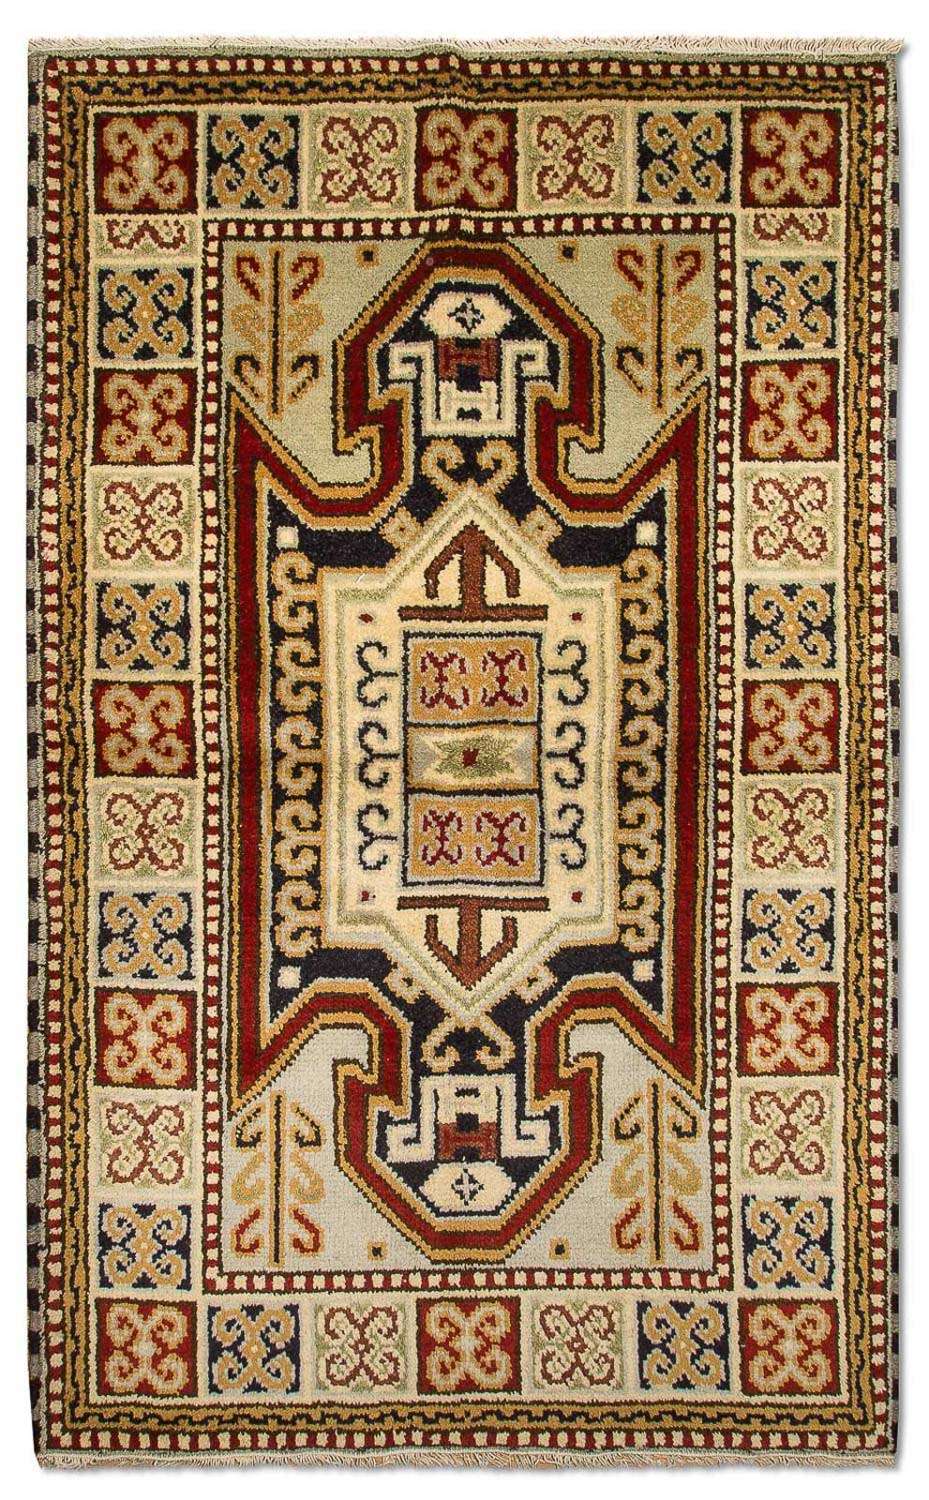 Orientalsk teppe - 154 x 91 cm - beige